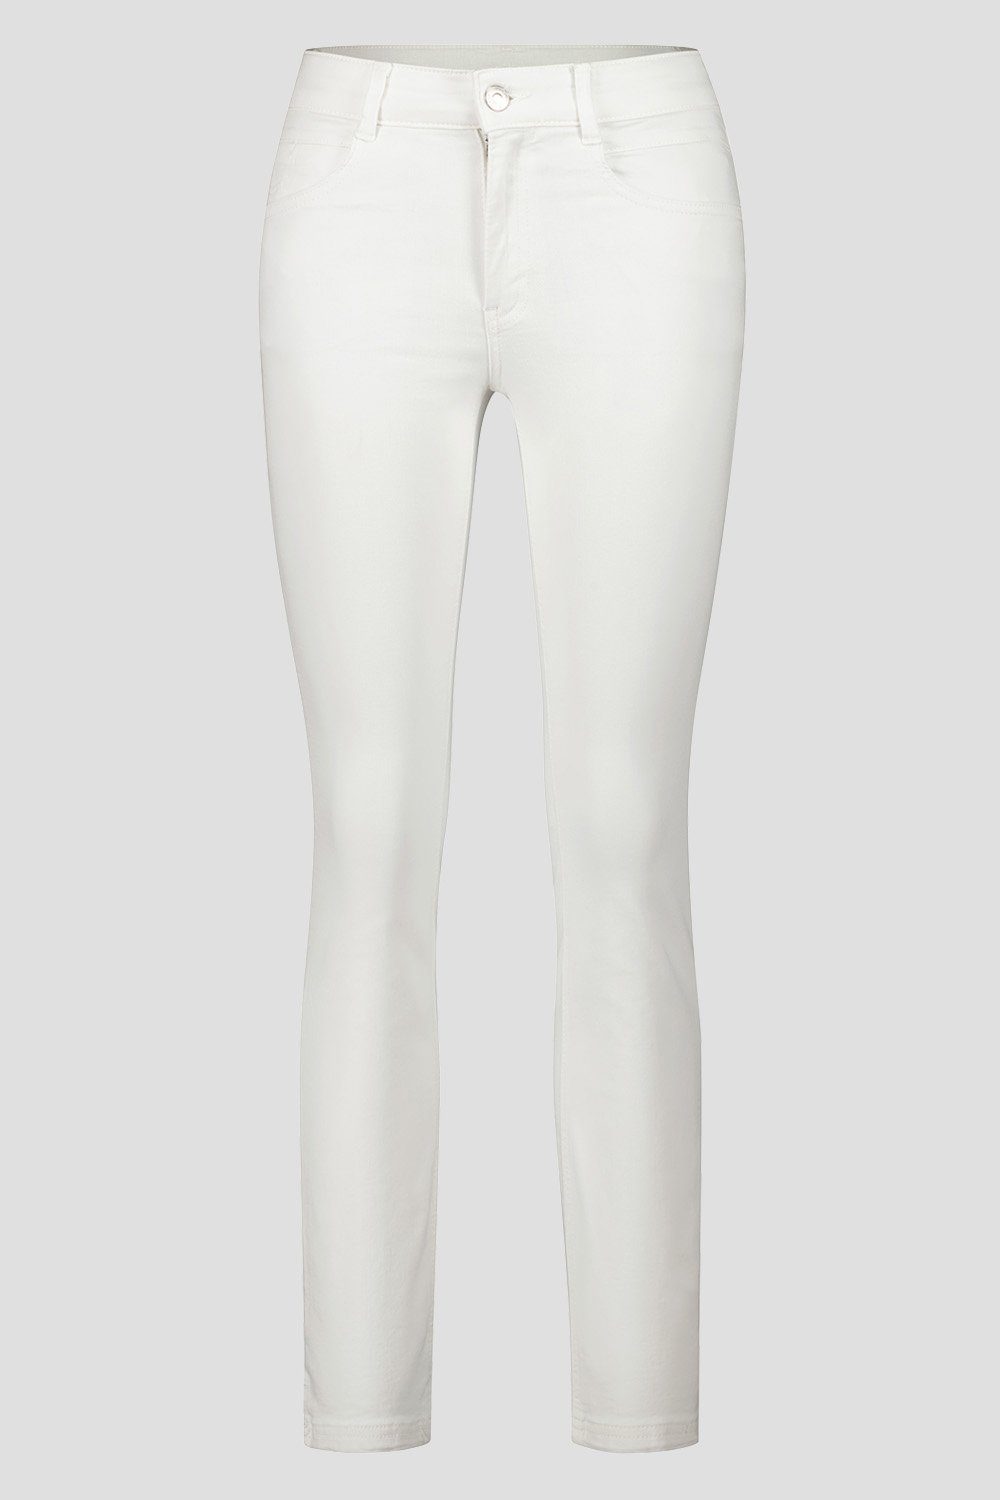 Atelier Slim-fit-Jeans White VICKY743-670801 GARDEUR Atelier GARDEUR blau Denim